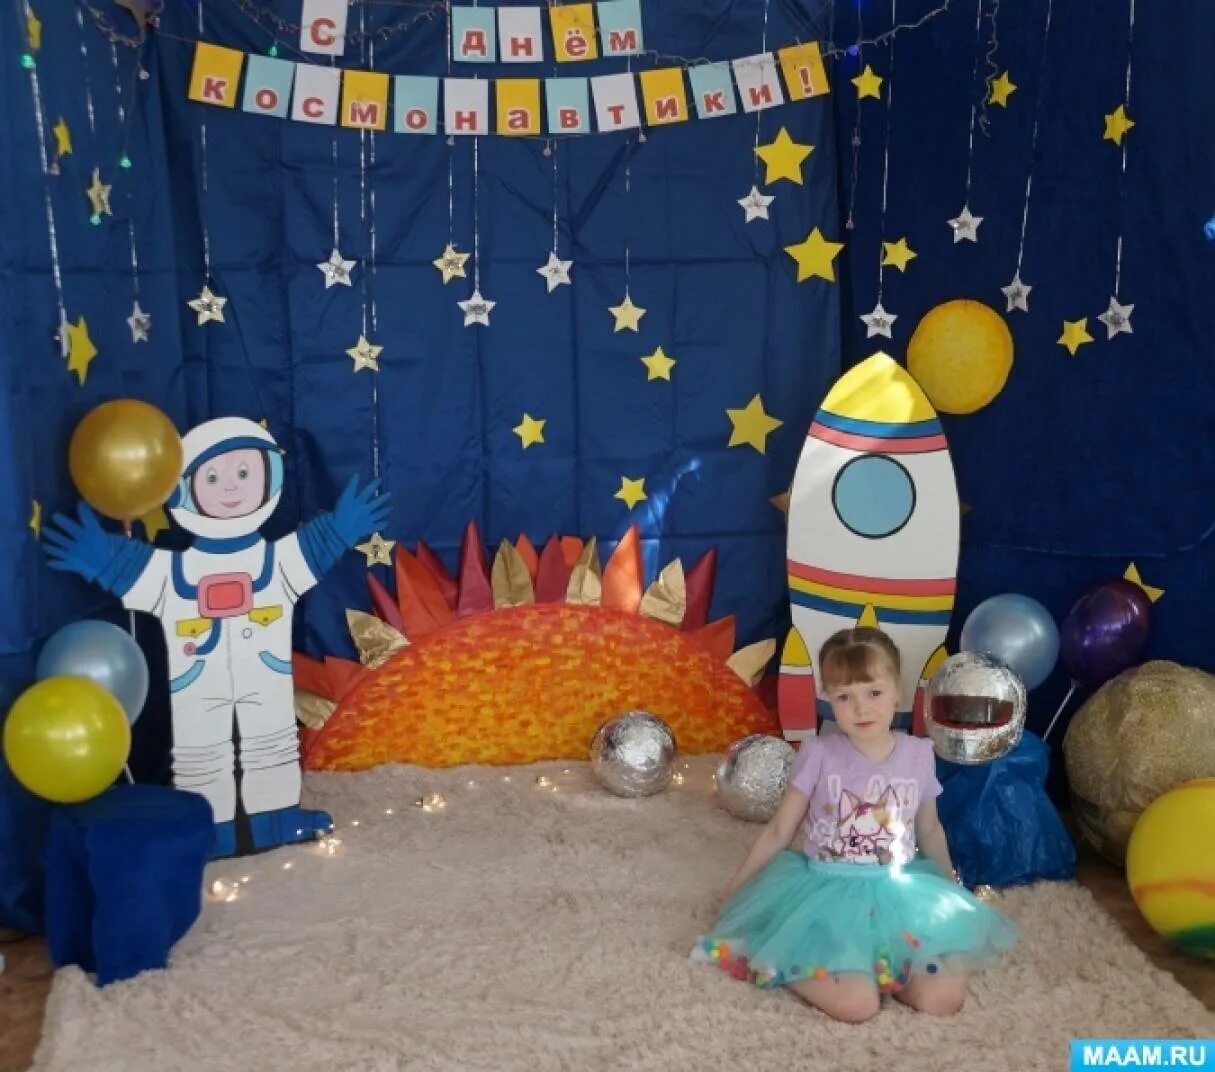 Фотозона космос в детском саду. Фото зона ко Дню космонавтики в детском саду. Фотозона на день космонавтики в детском саду. Оформление фотозоны космос в детском саду. Оформление к дню космонавтики в детском саду